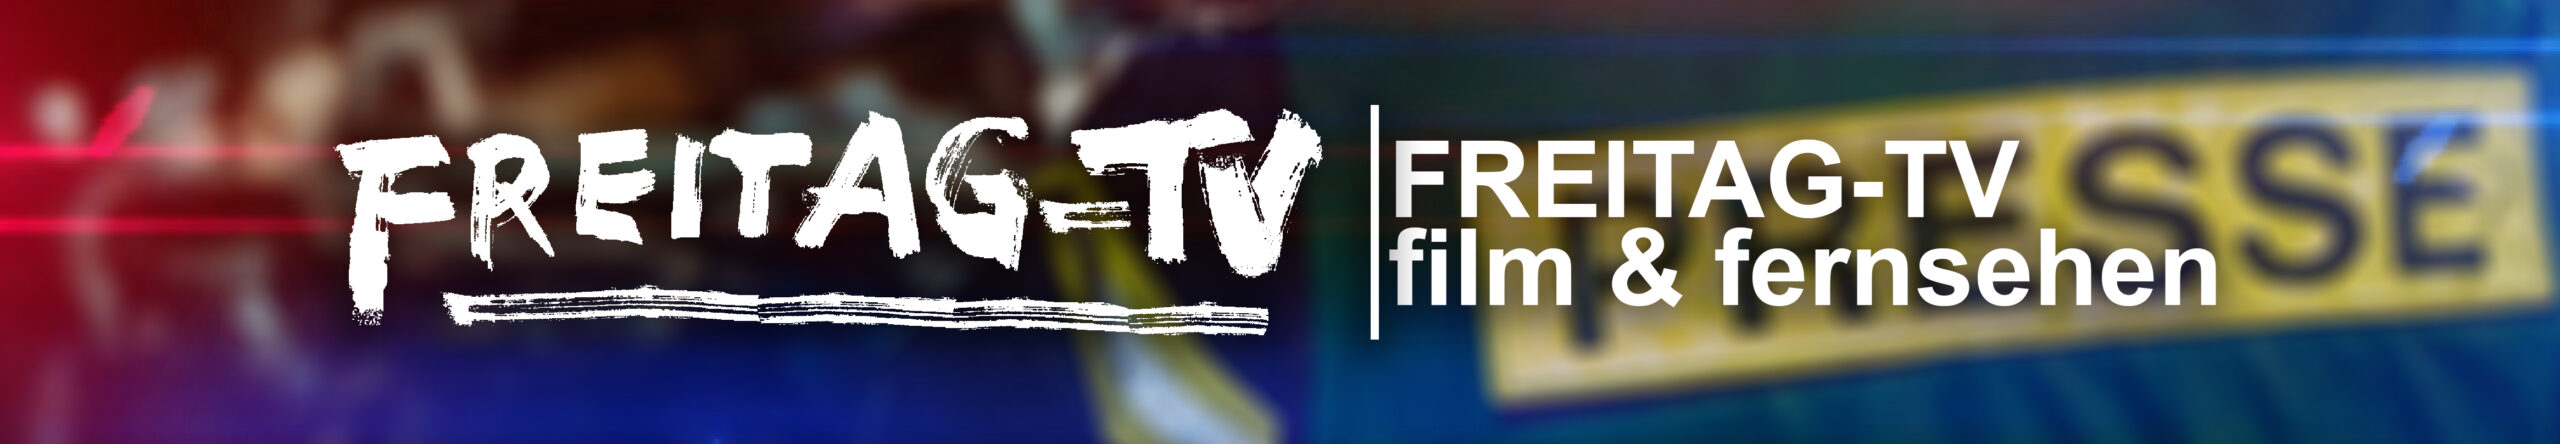 FREITAG-TV | film & fernsehen